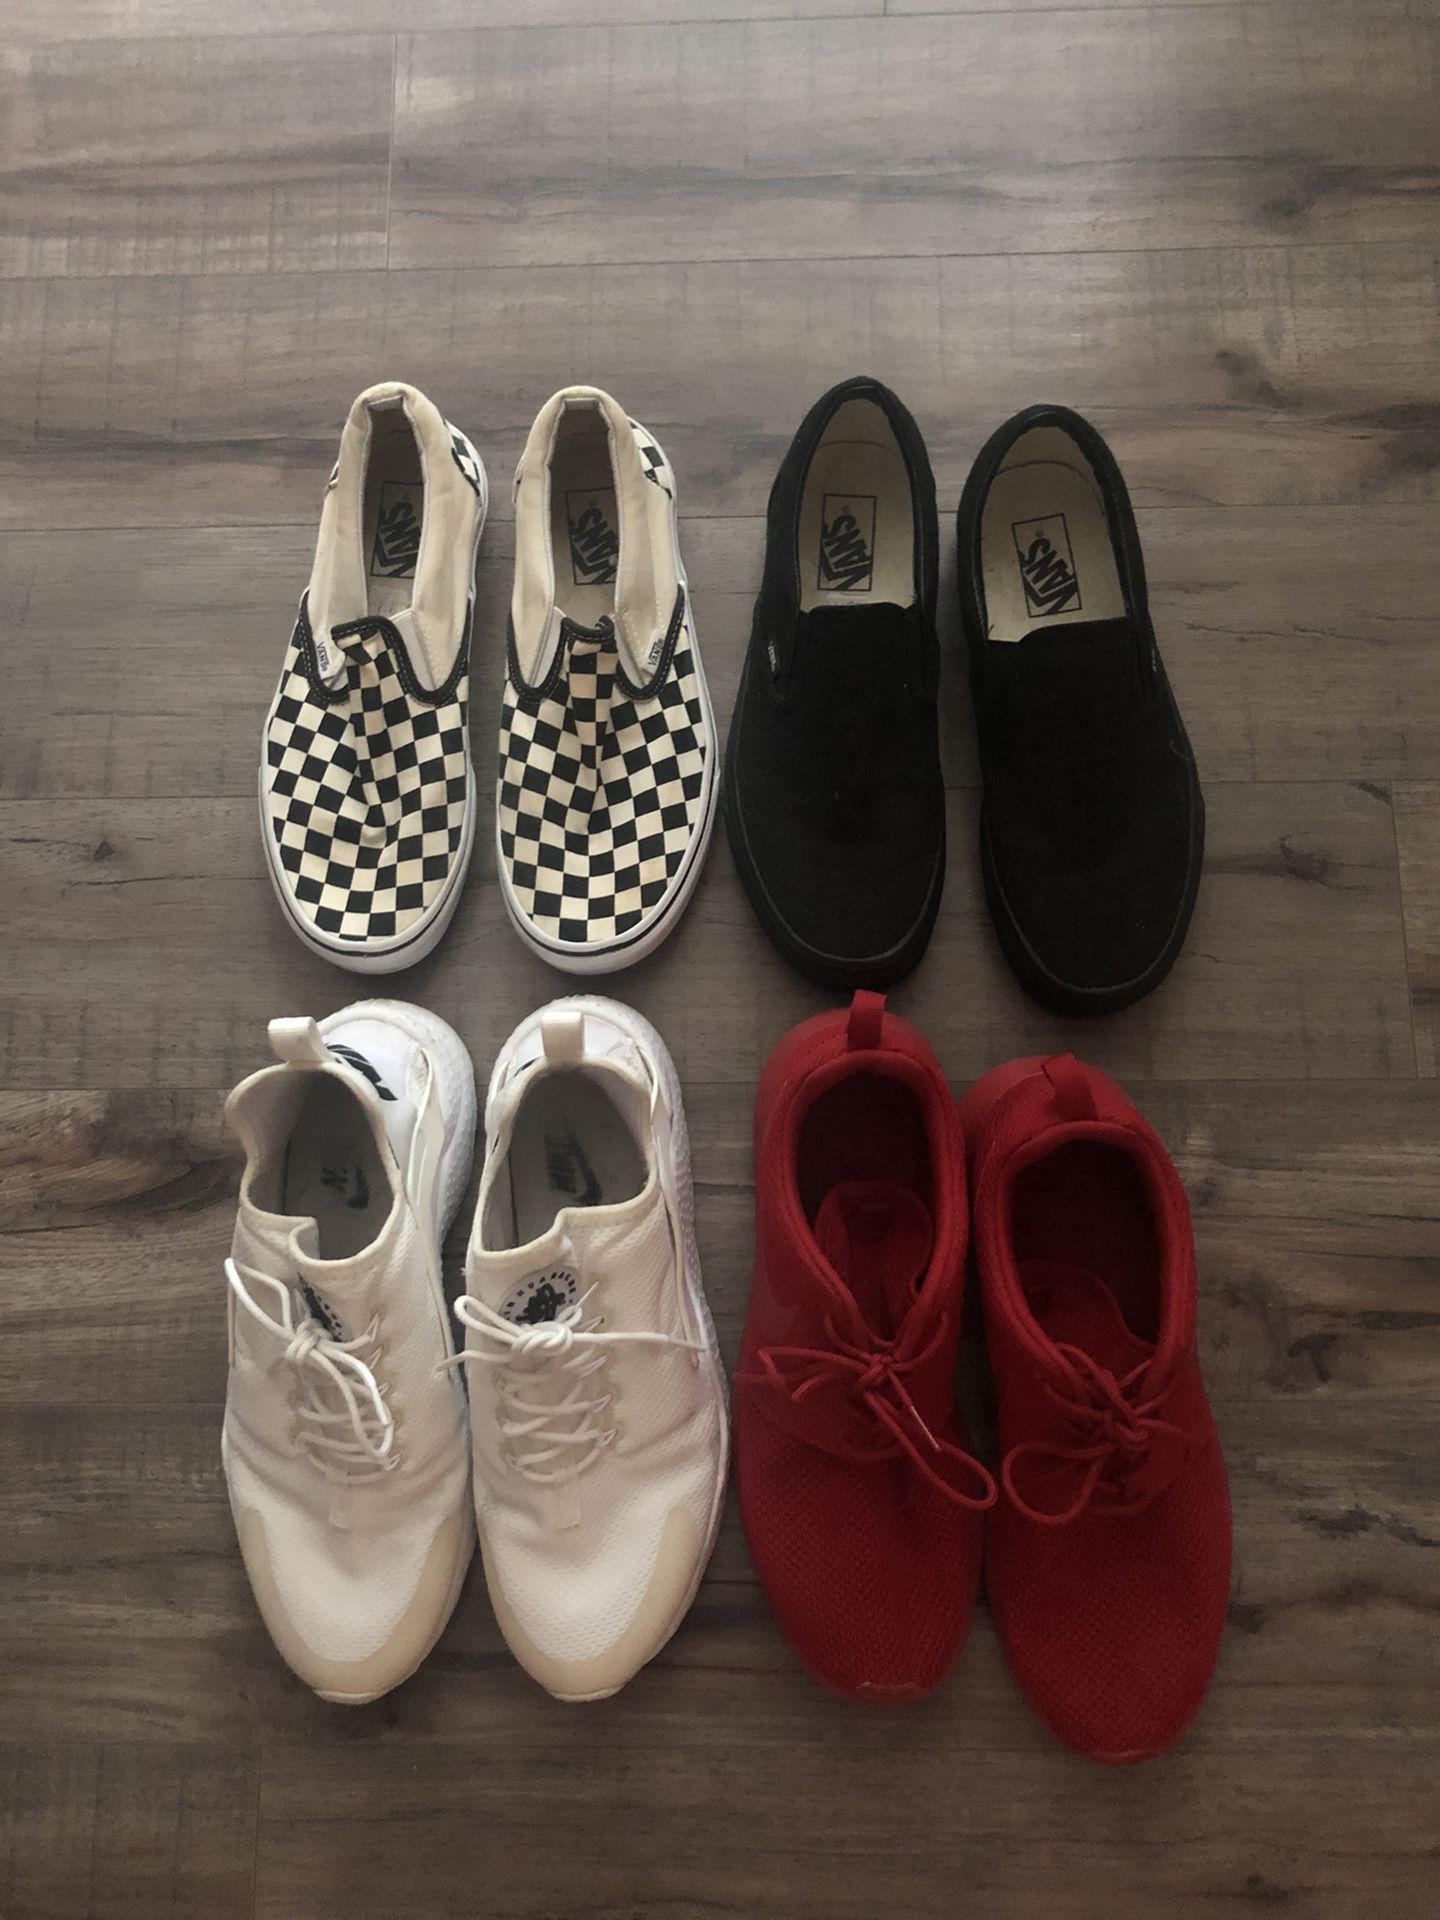 Vans/ Nike shoes